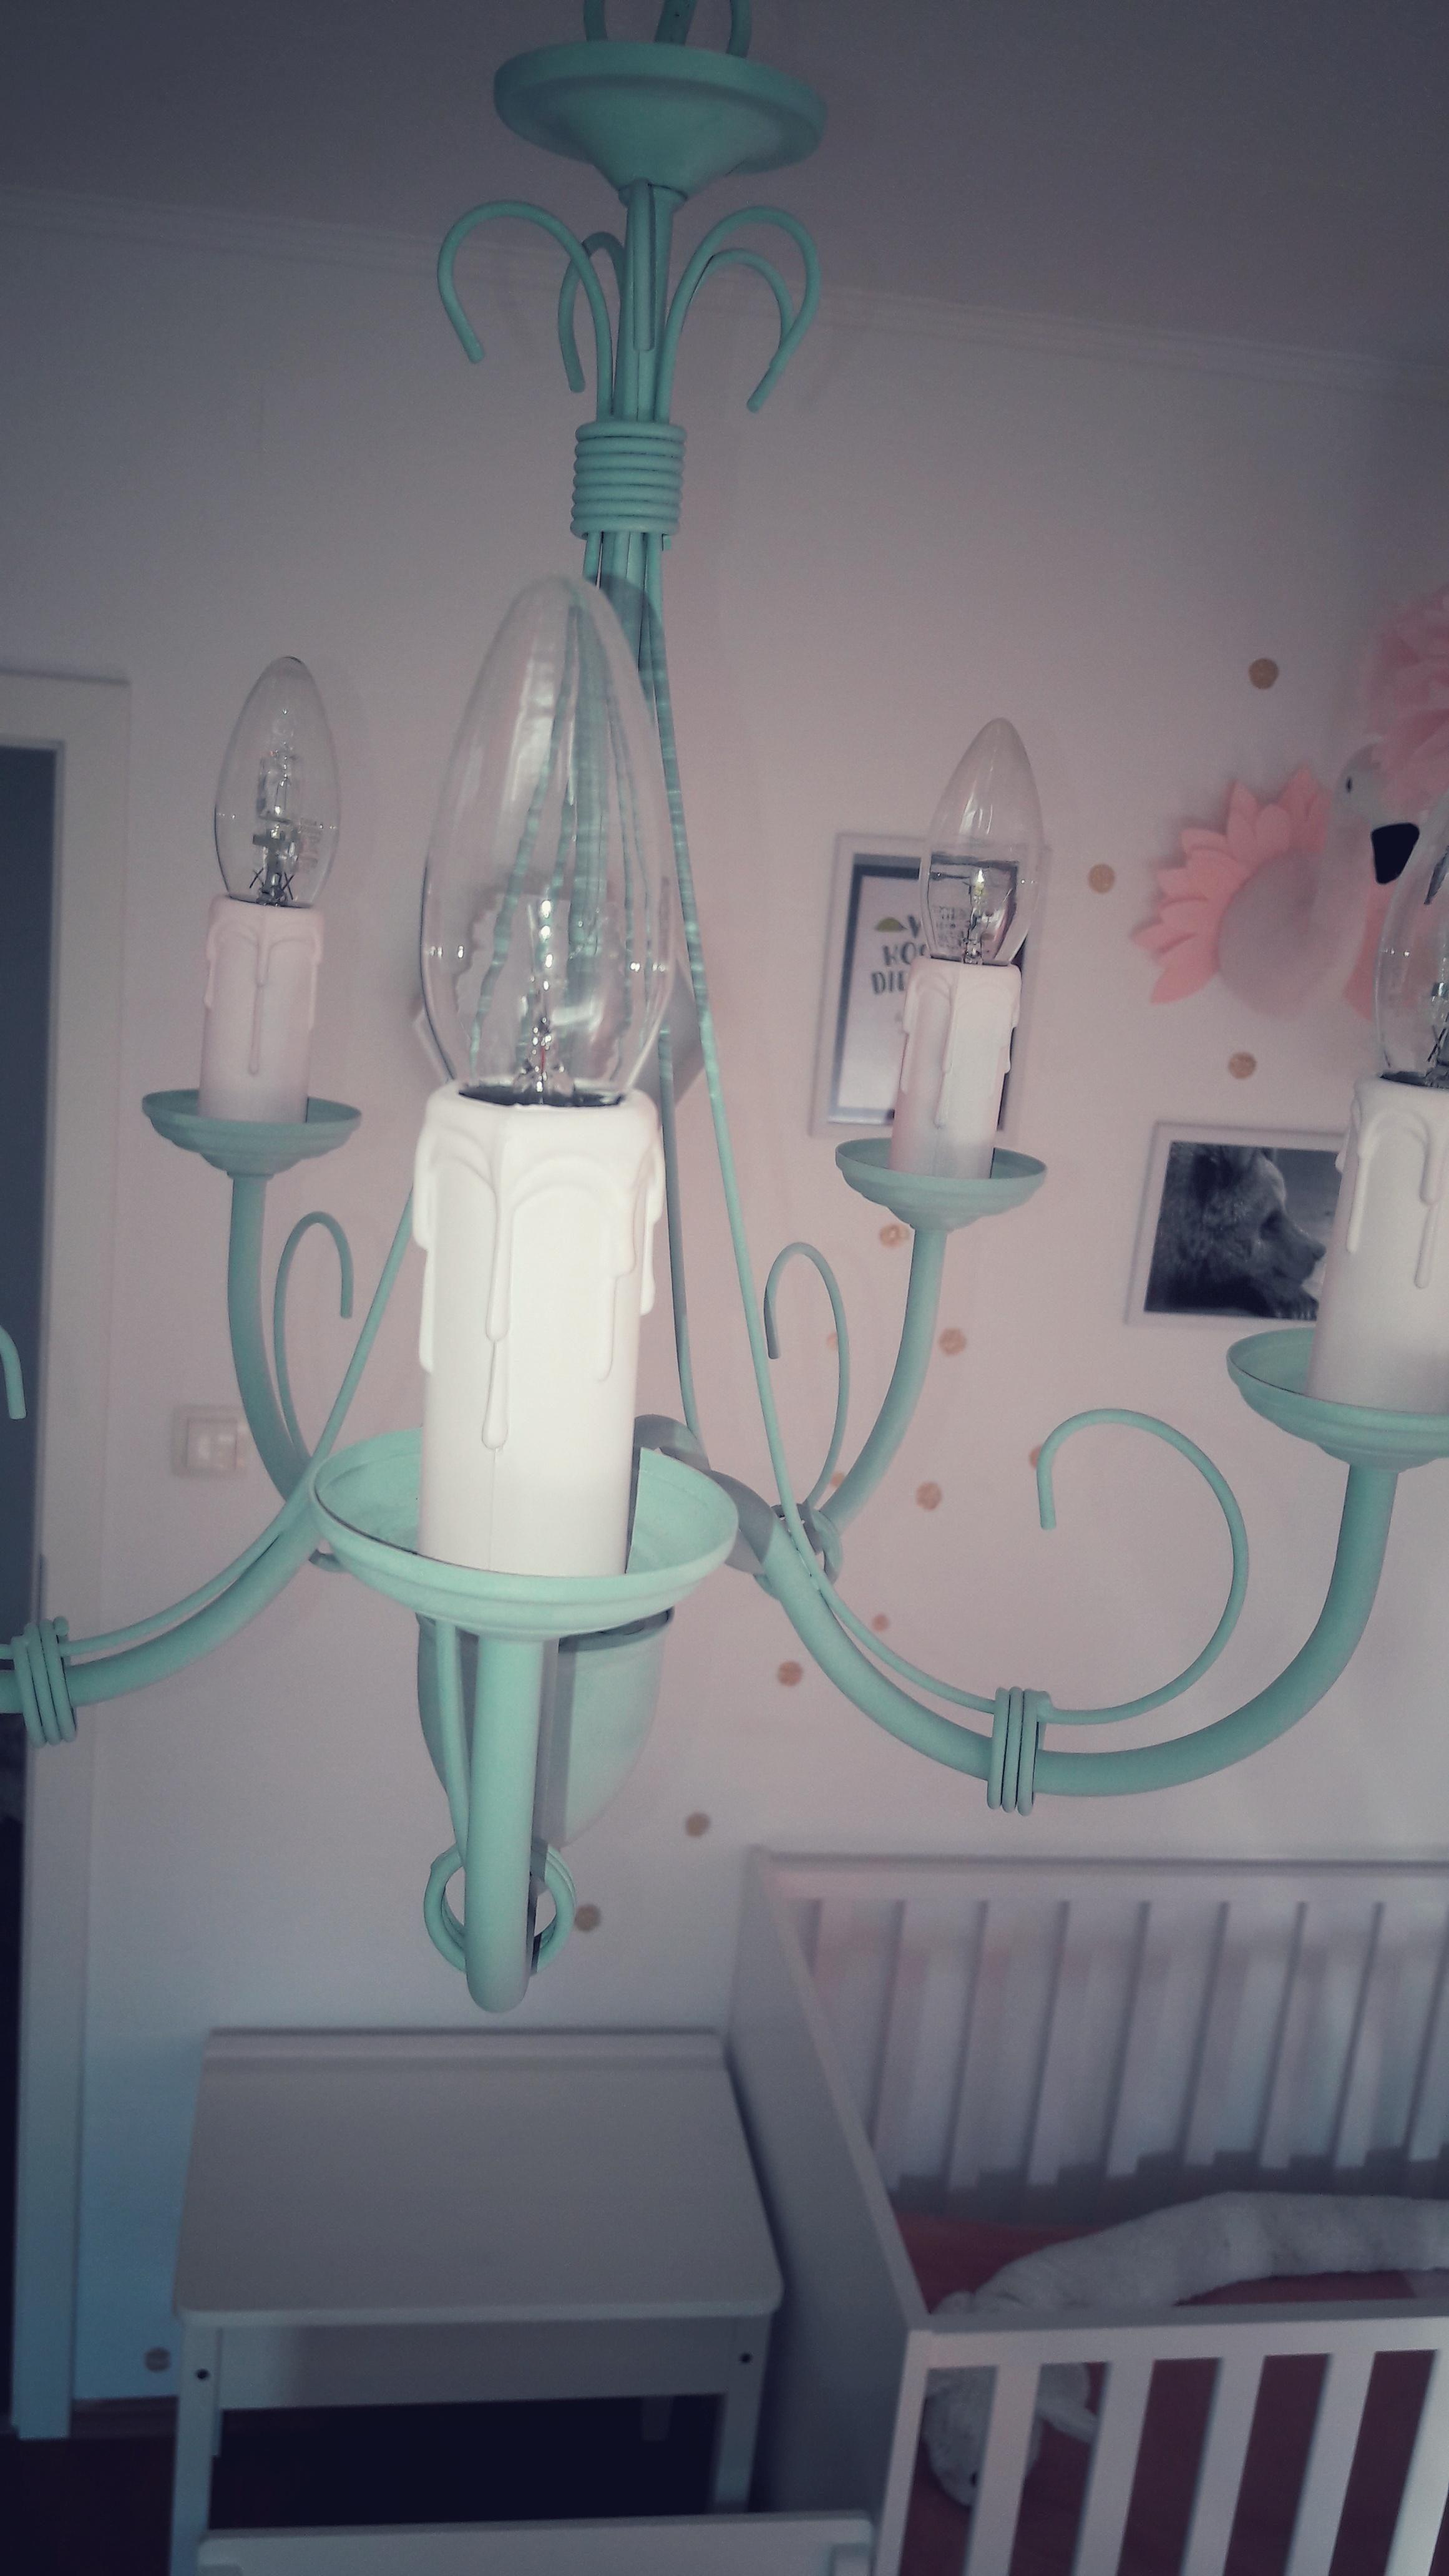 #DIY #Chalky #Lampe #Kinderzimmer 
#Aliceimwunderland